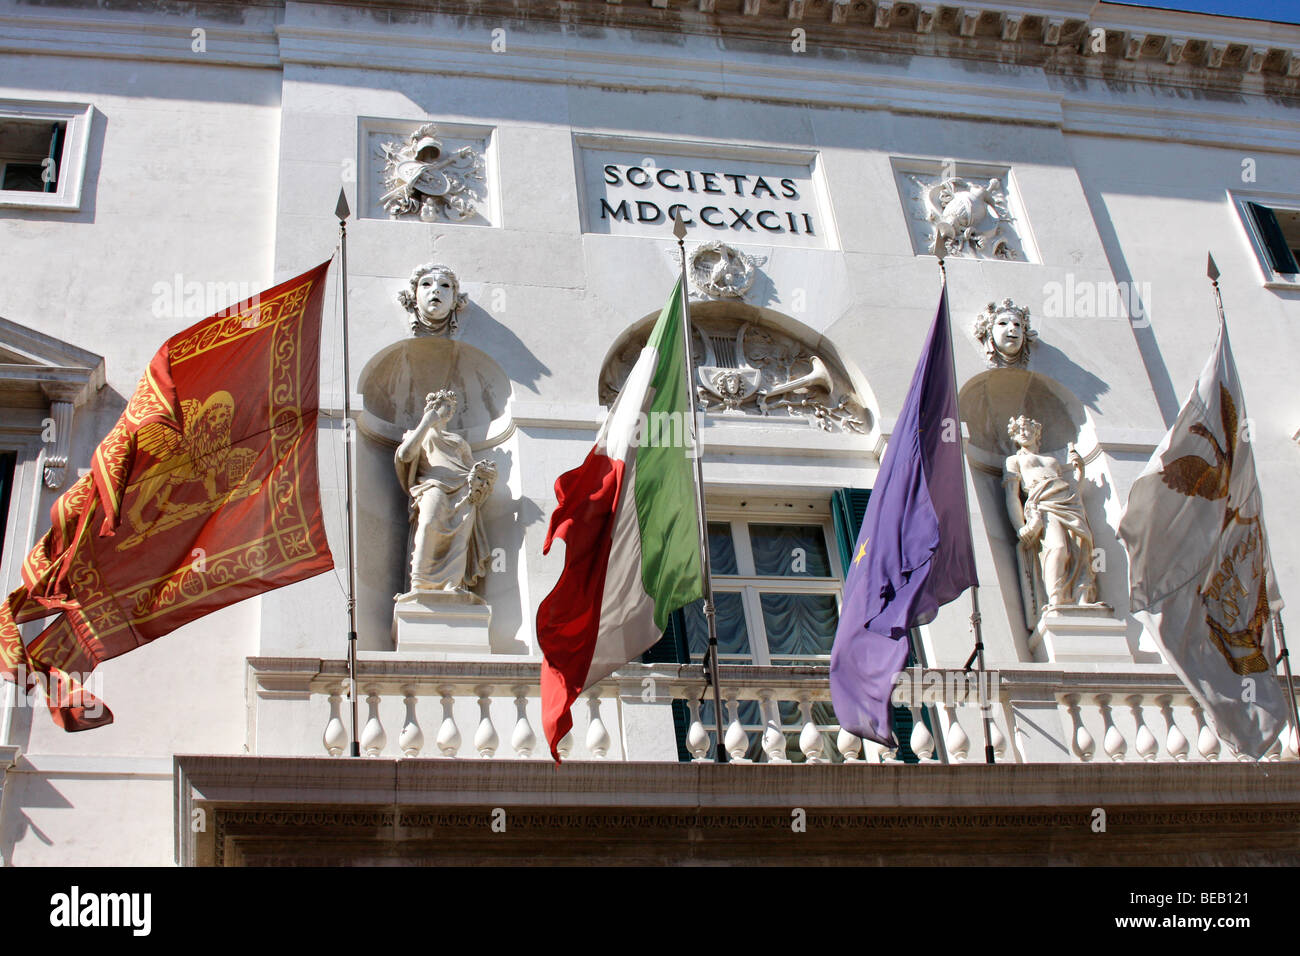 Drapeaux au vent à l'extérieur du théâtre La Fenice, l'Opéra de Venise, Italie Banque D'Images